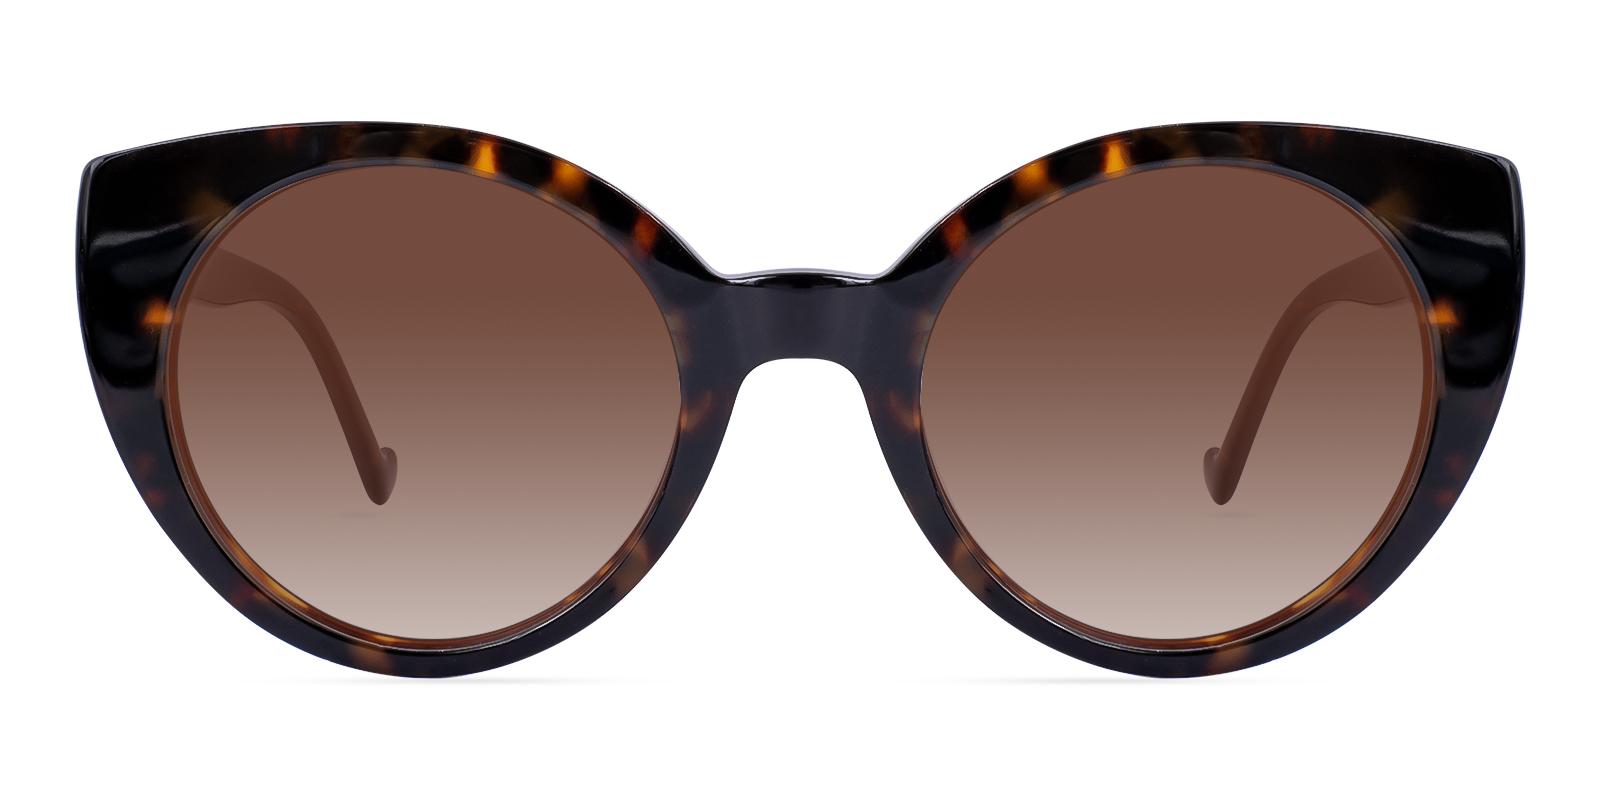 Difator Tortoise Acetate Sunglasses , UniversalBridgeFit Frames from ABBE Glasses